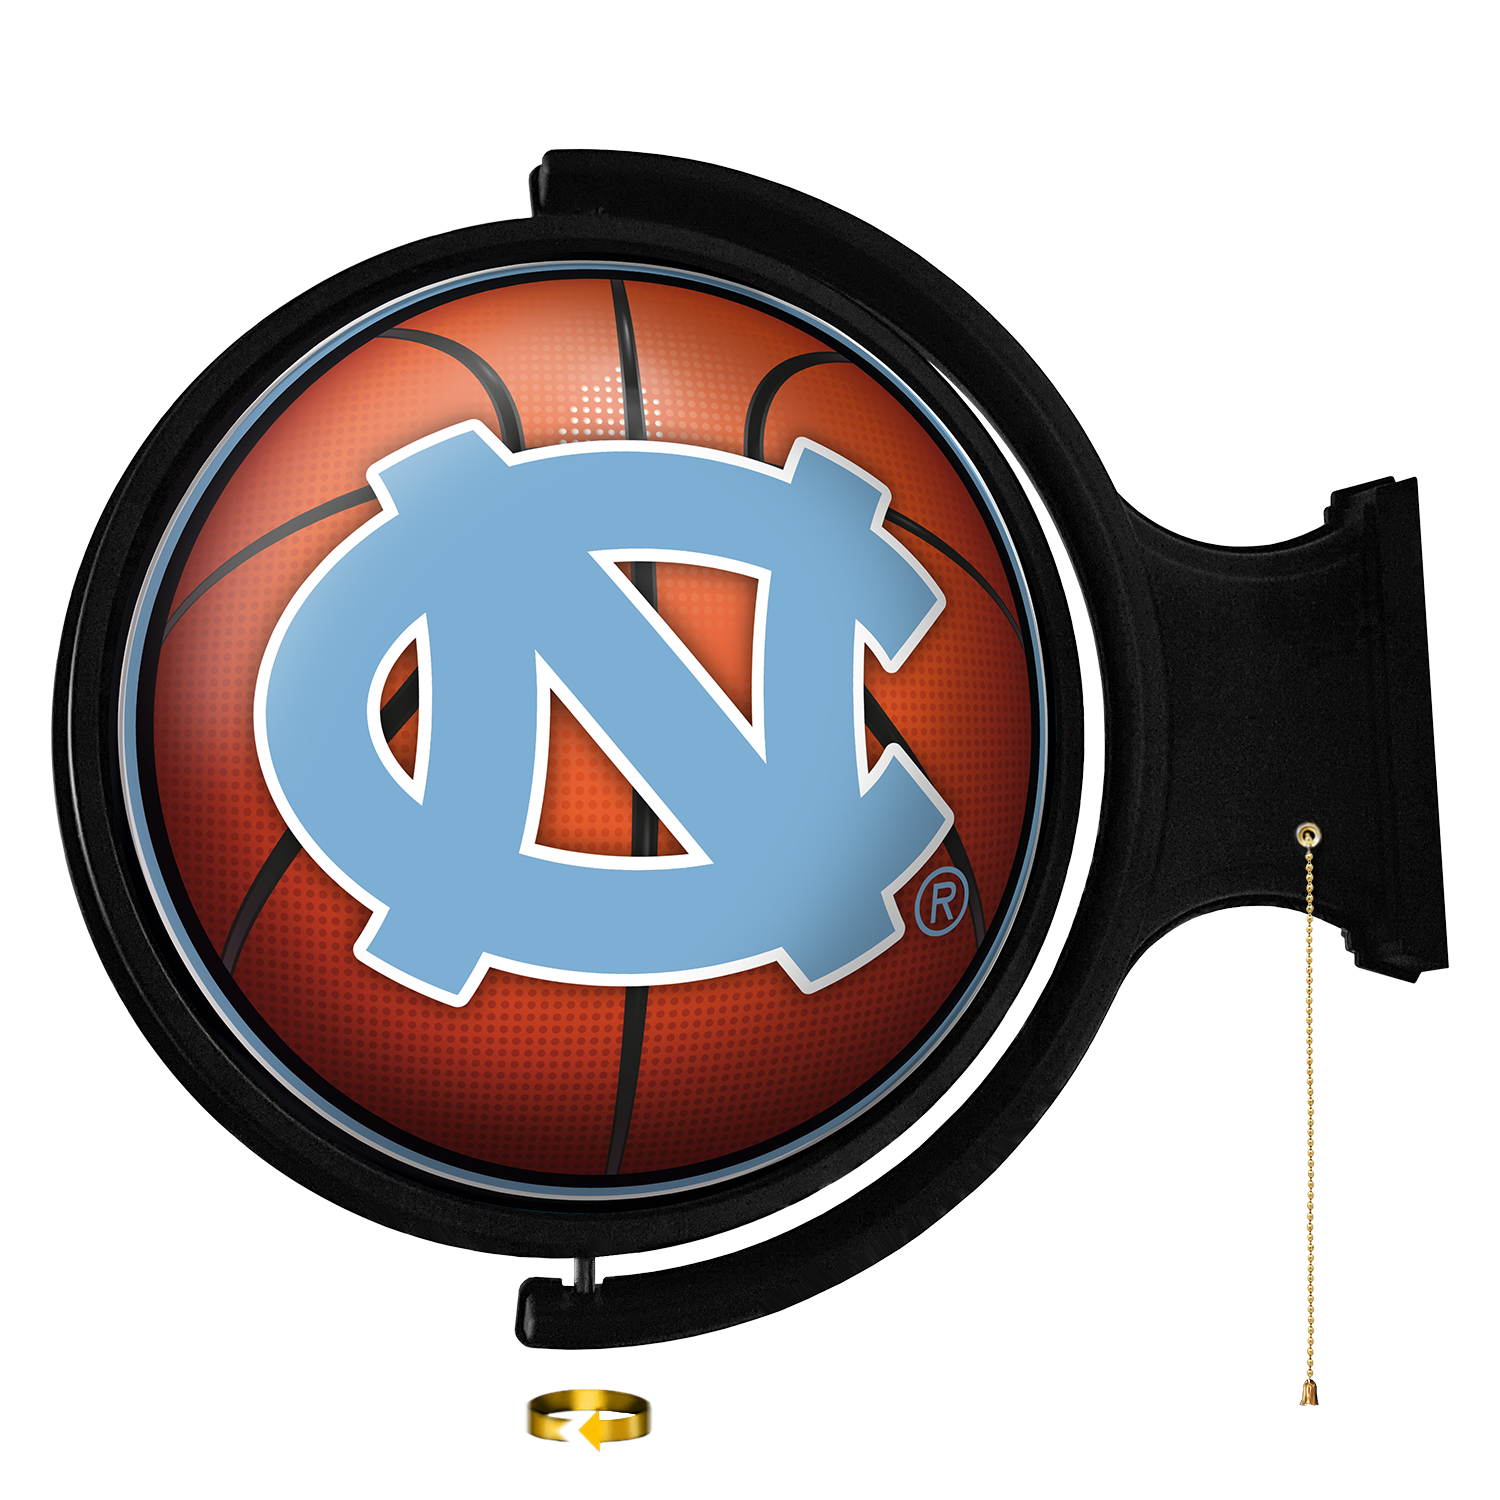 North Carolina Tar Heels Round Basketball Rotating Wall Sign